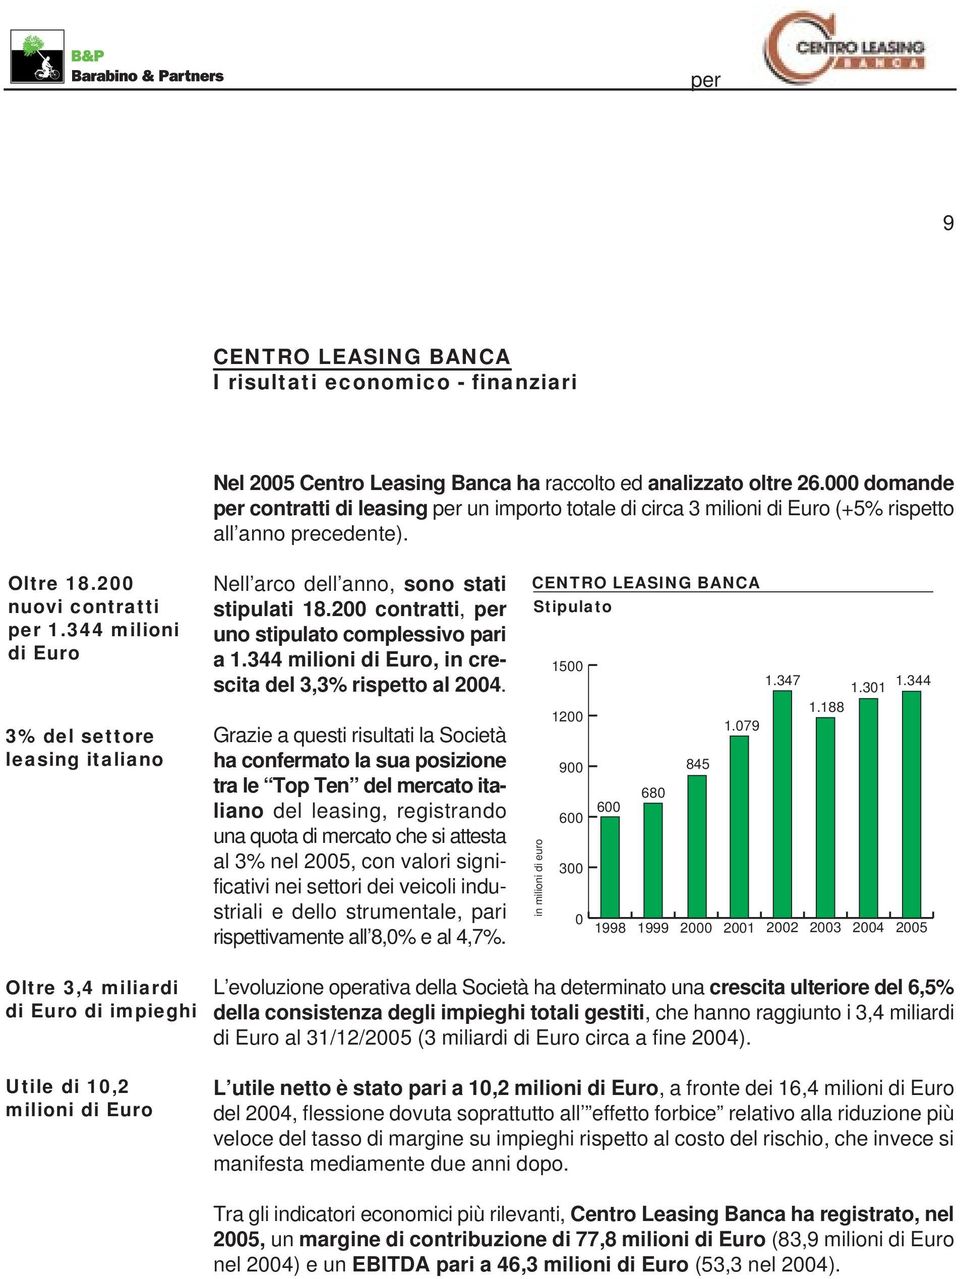 344 milioni di Euro 3% del settore leasing italiano Nell arco dell anno, sono stati stipulati 18.200 contratti, per uno stipulato complessivo pari a 1.